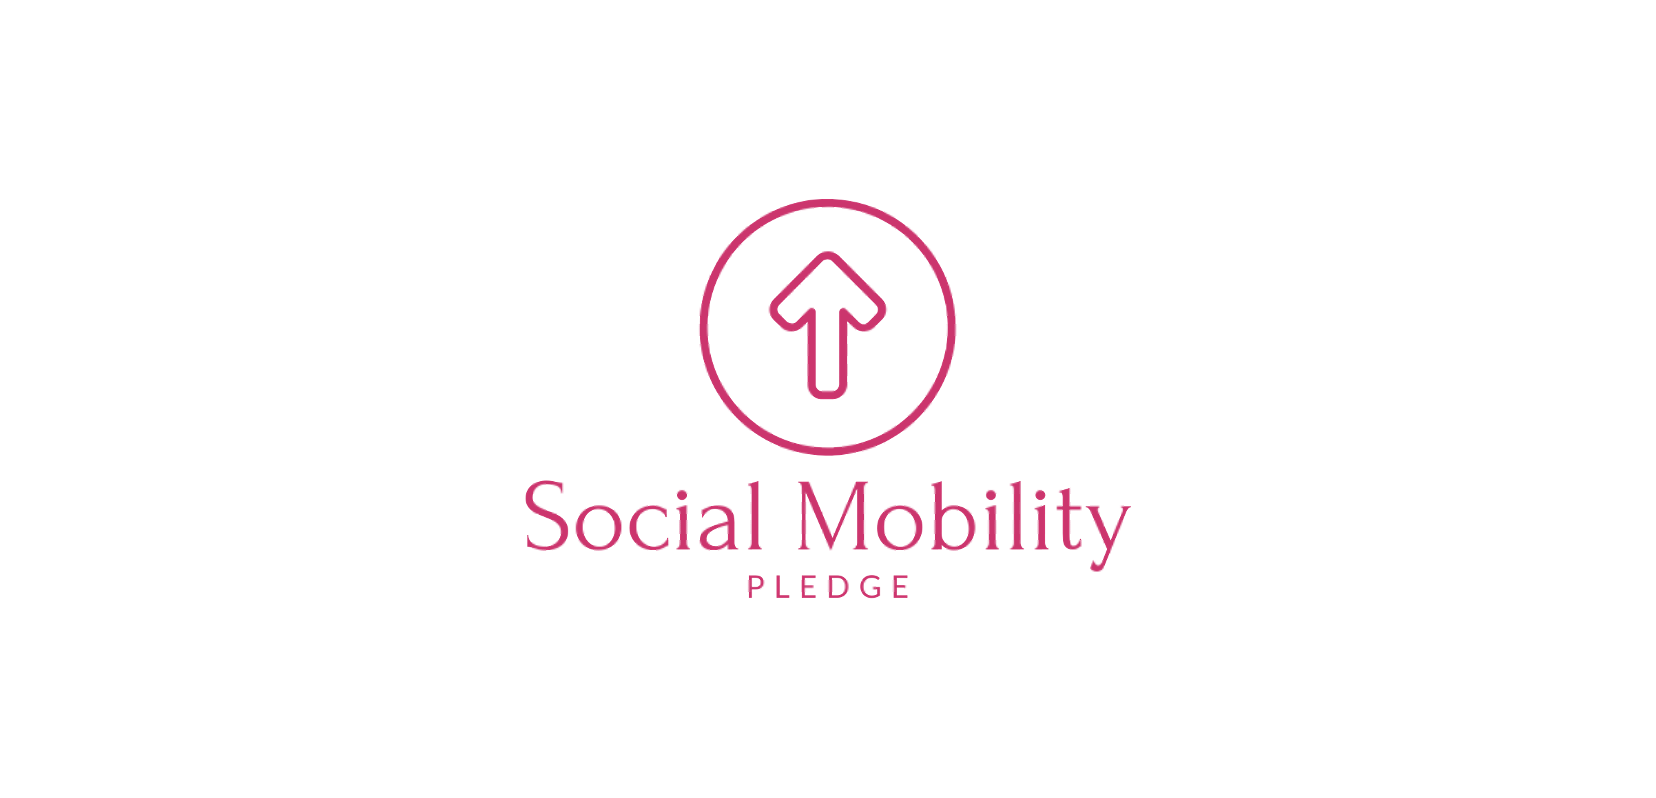 Windo_Diversity_Pledges_Social_Mobility_Pledge